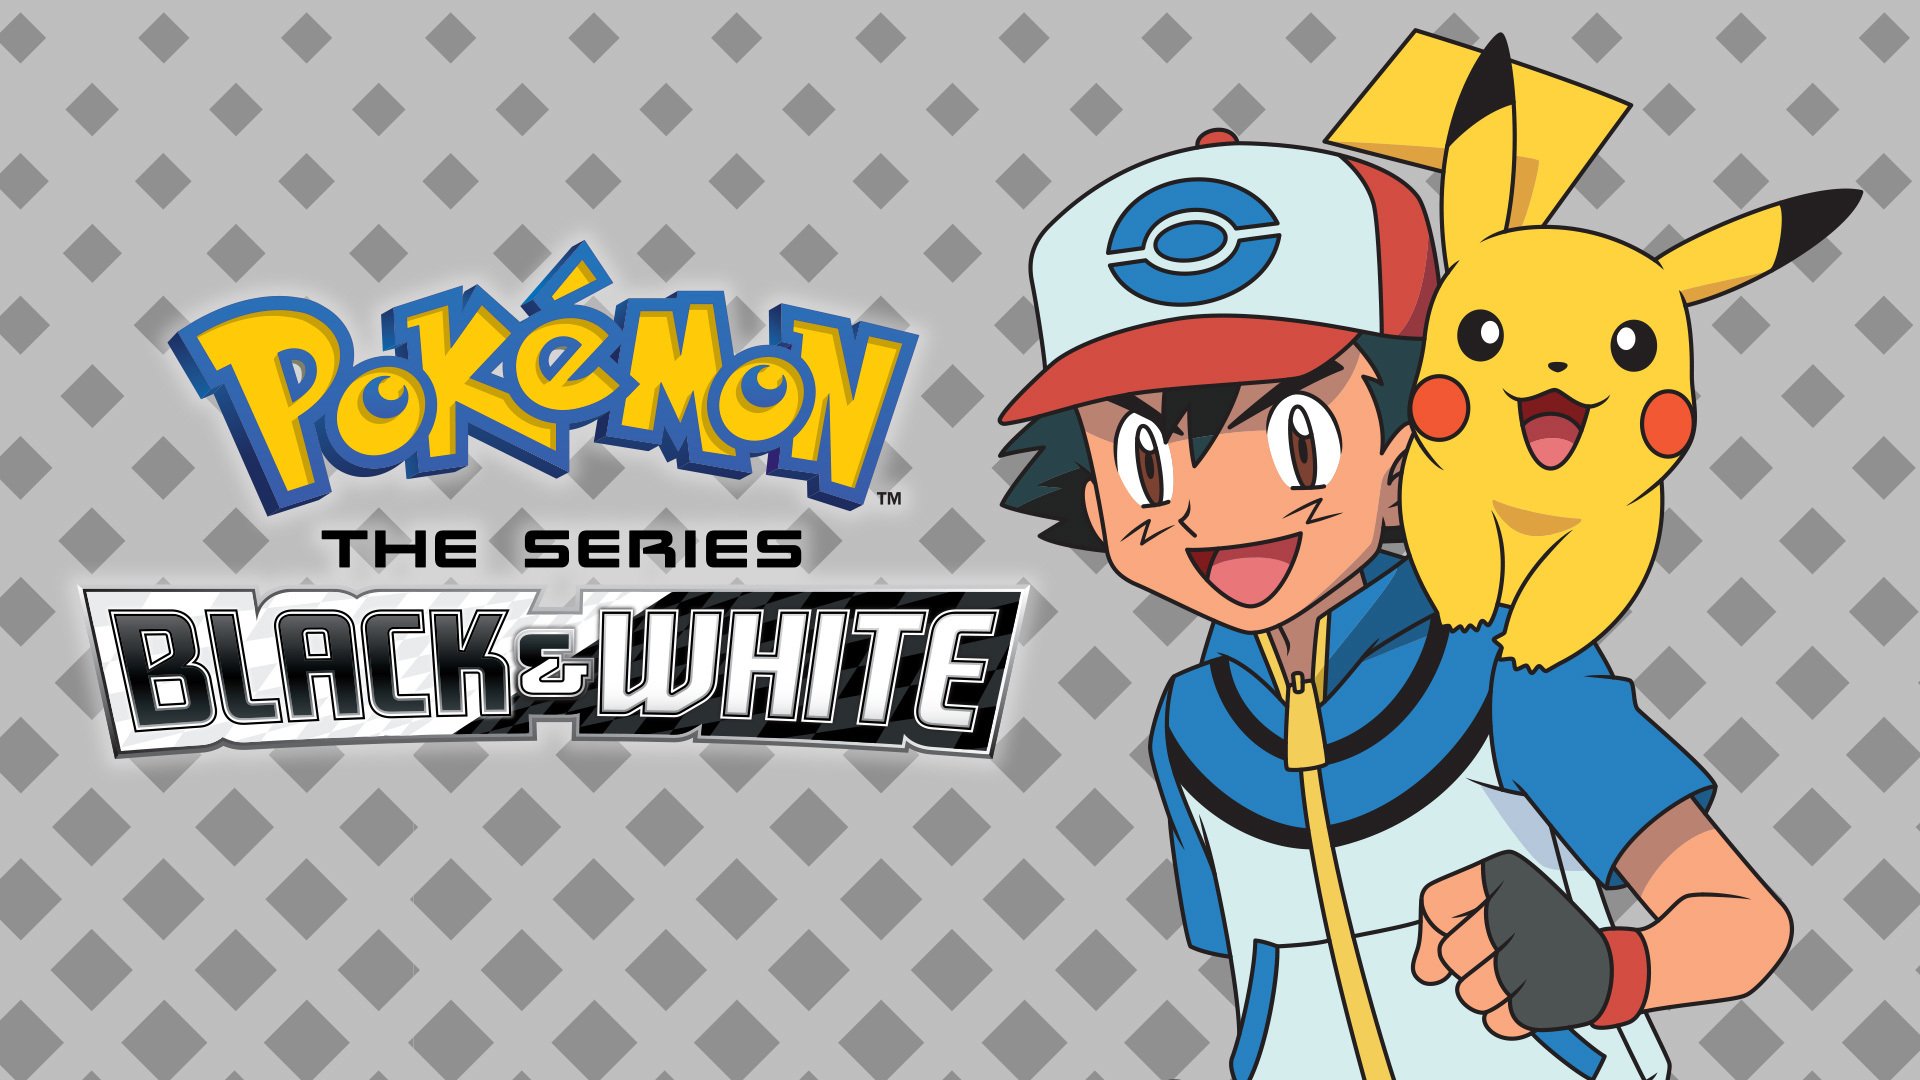 Pokémon Black & White Is Now On PokémonTV